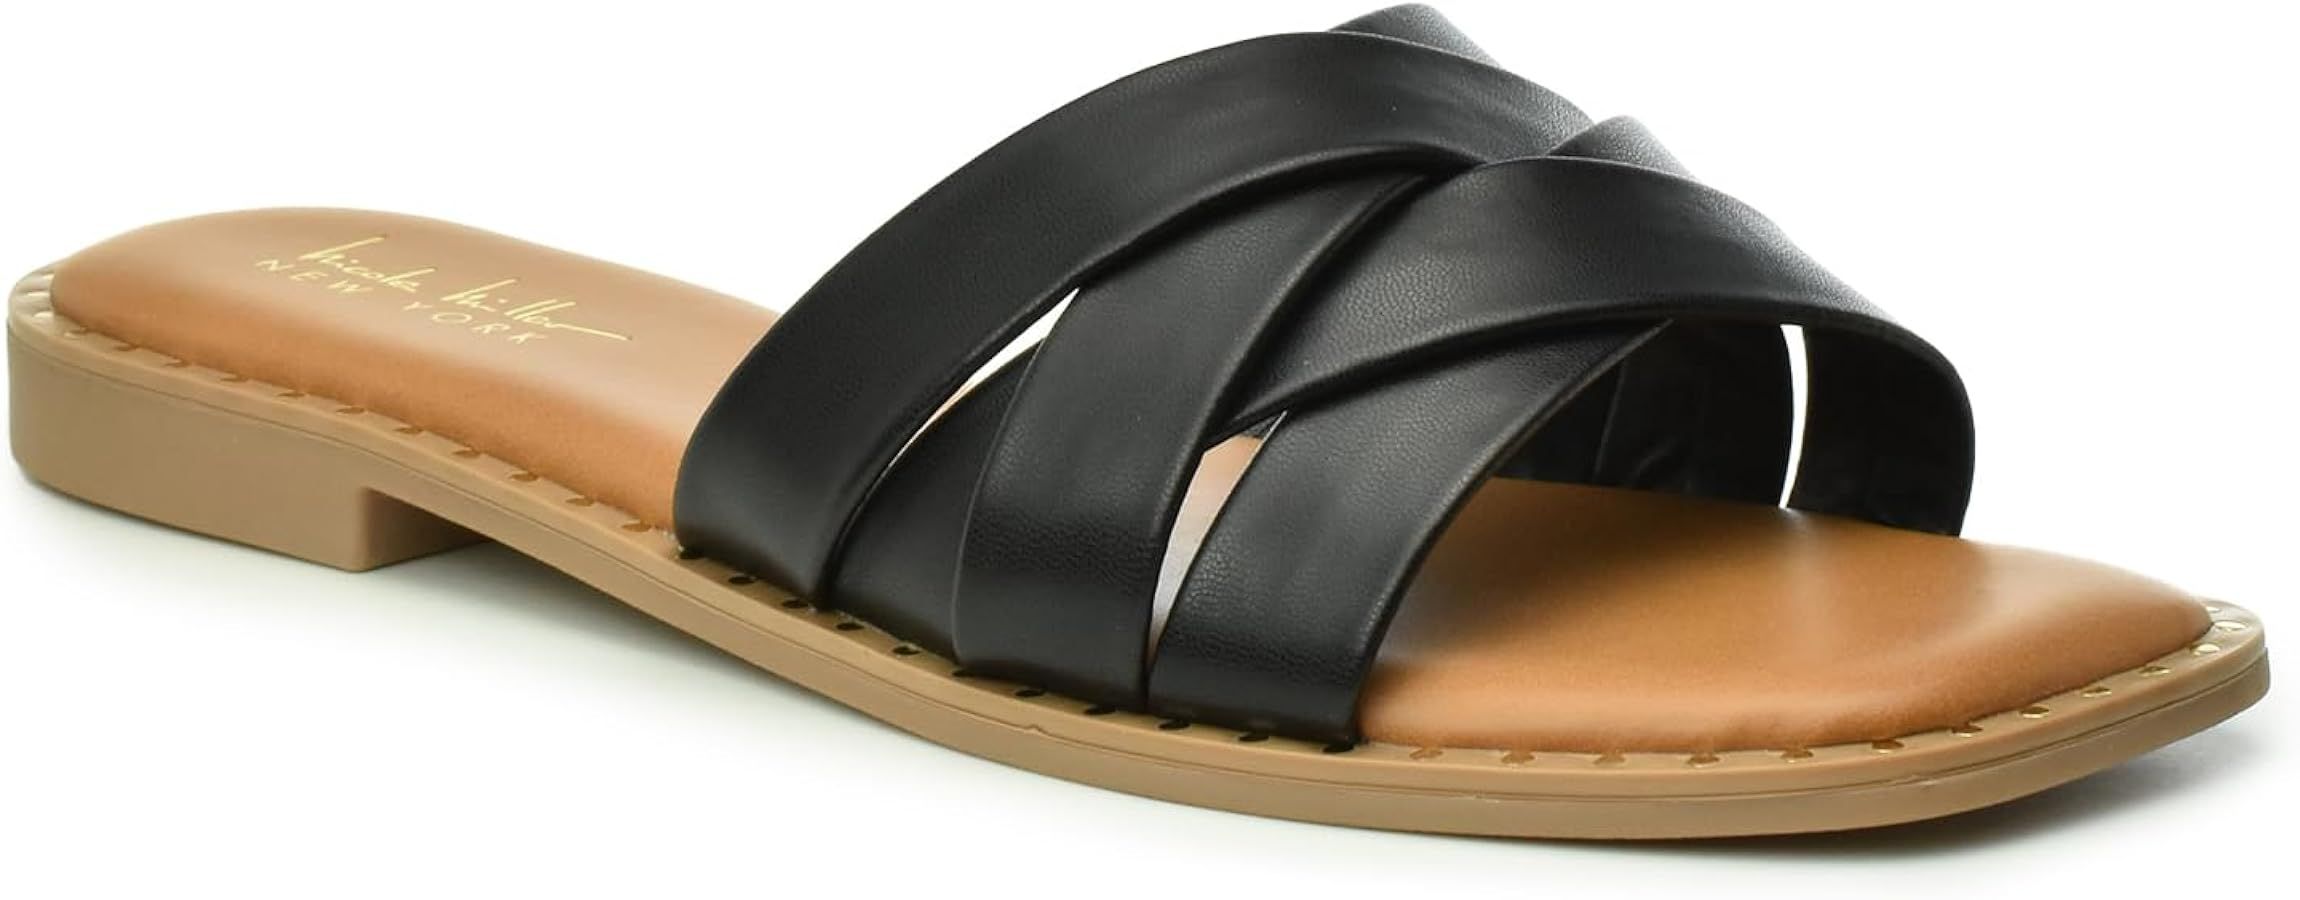 NICOLE MILLER Rally Women's Sandals - Stylish & Lightweight Open Toe Sandals - Durable & Non-Slip... | Amazon (US)